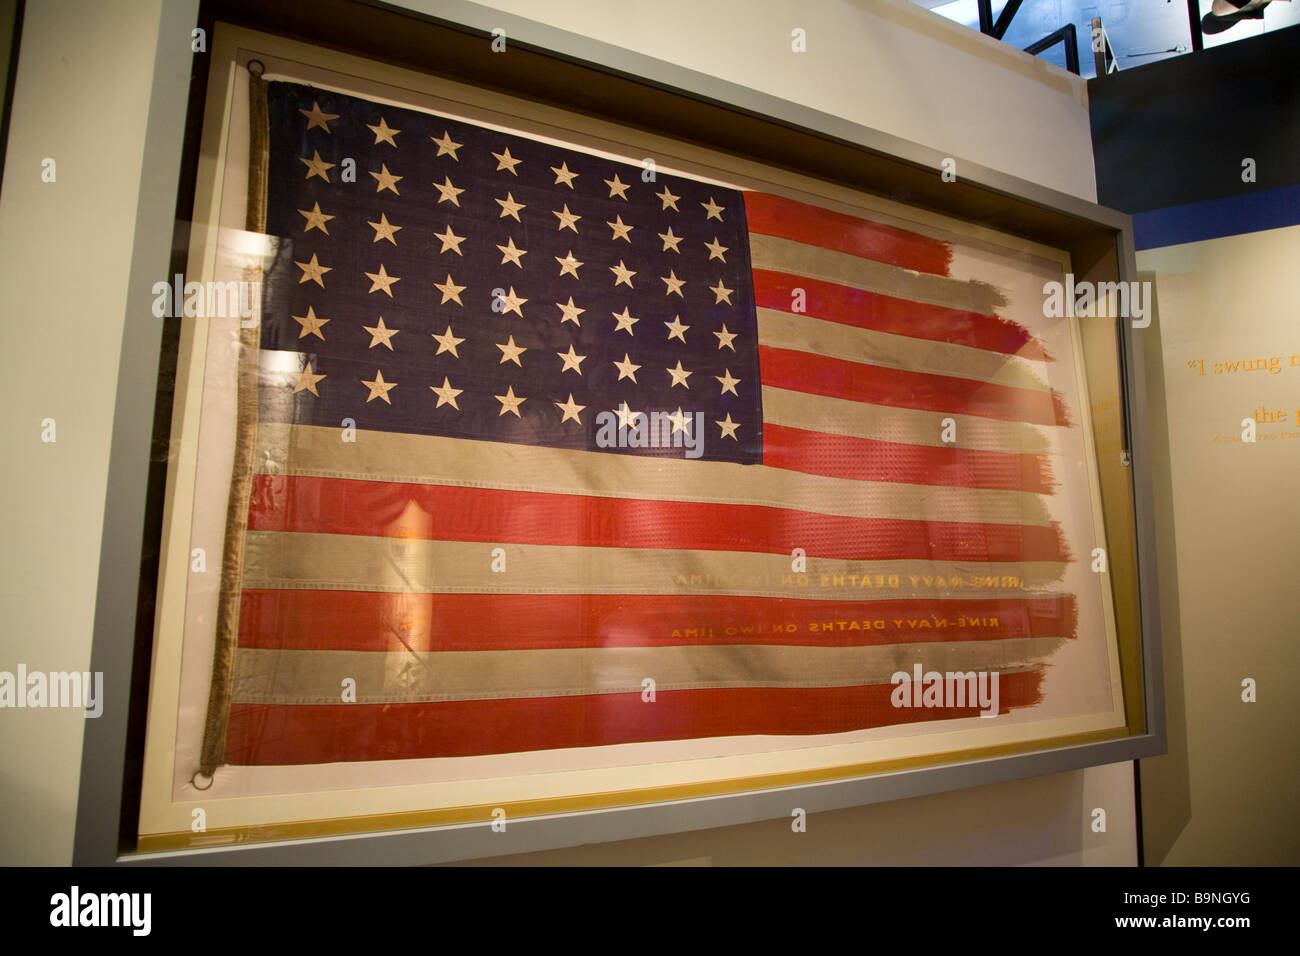 Le drapeau Américain a recueilli plus qu'Iwo Jima a été capturé par Joe Rosenthal dans son célèbre photographie de la levée du drapeau sur Iwo Ji Banque D'Images